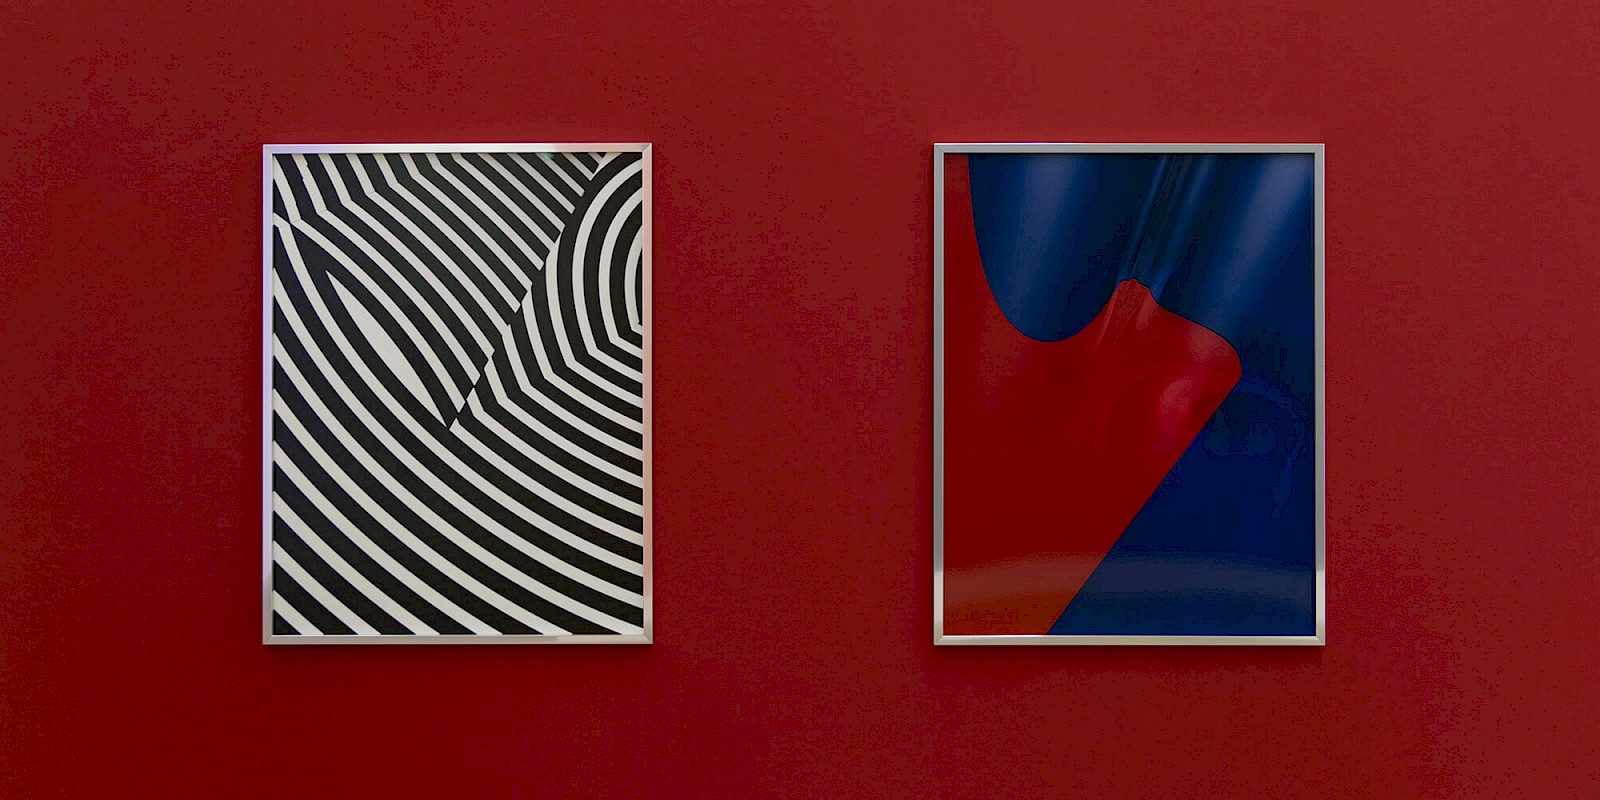 Shirana Shahbazi, Exhibition view, Galerie Peter Kilchmann, Zurich, Switzerland, 2017